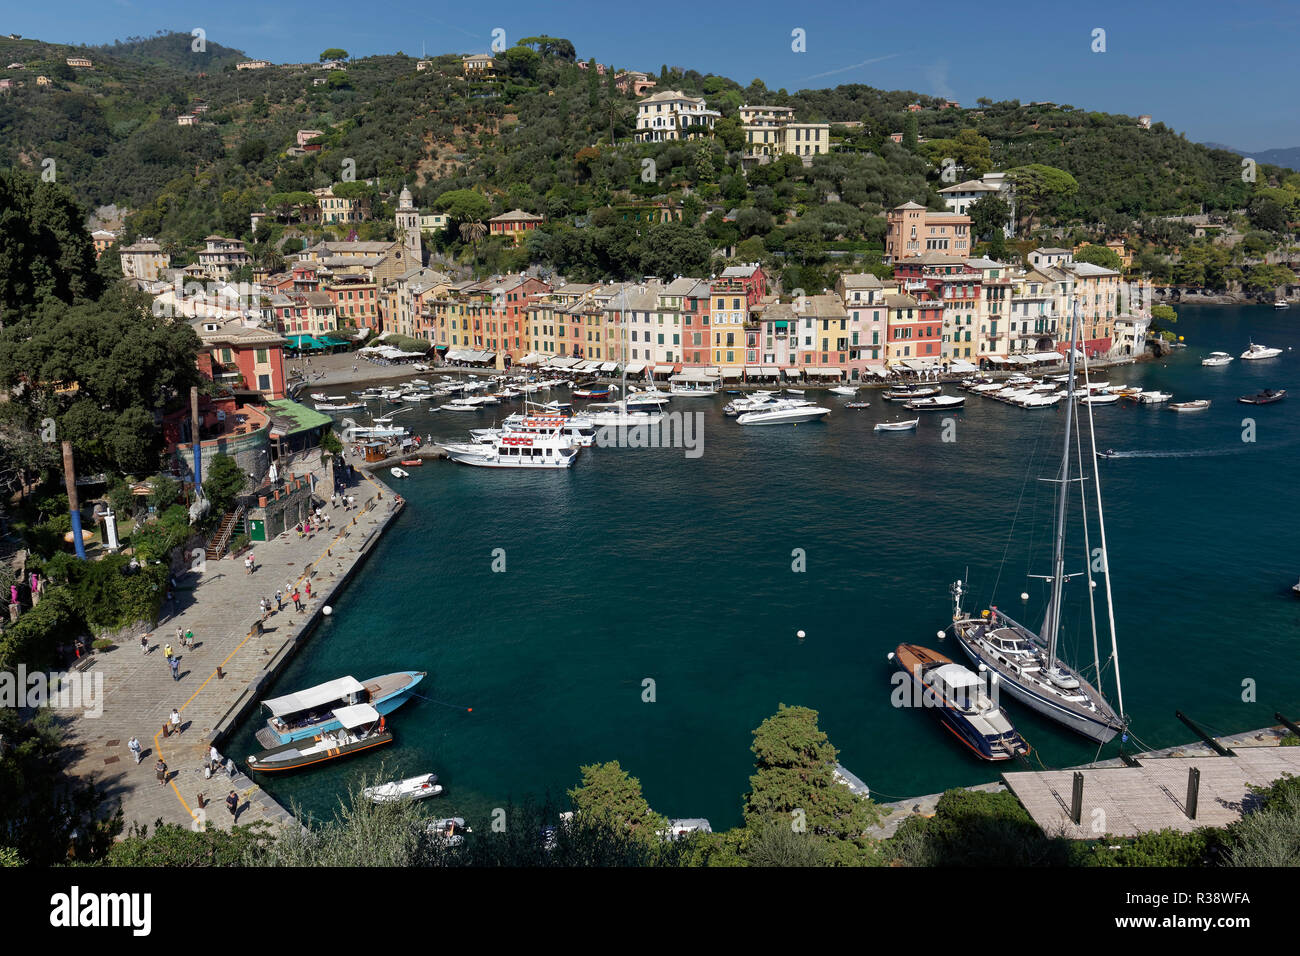 Bay of Portofino, Golfo Paradiso, Province of Genoa, Riviera di Levante, Liguria, Italy Stock Photo